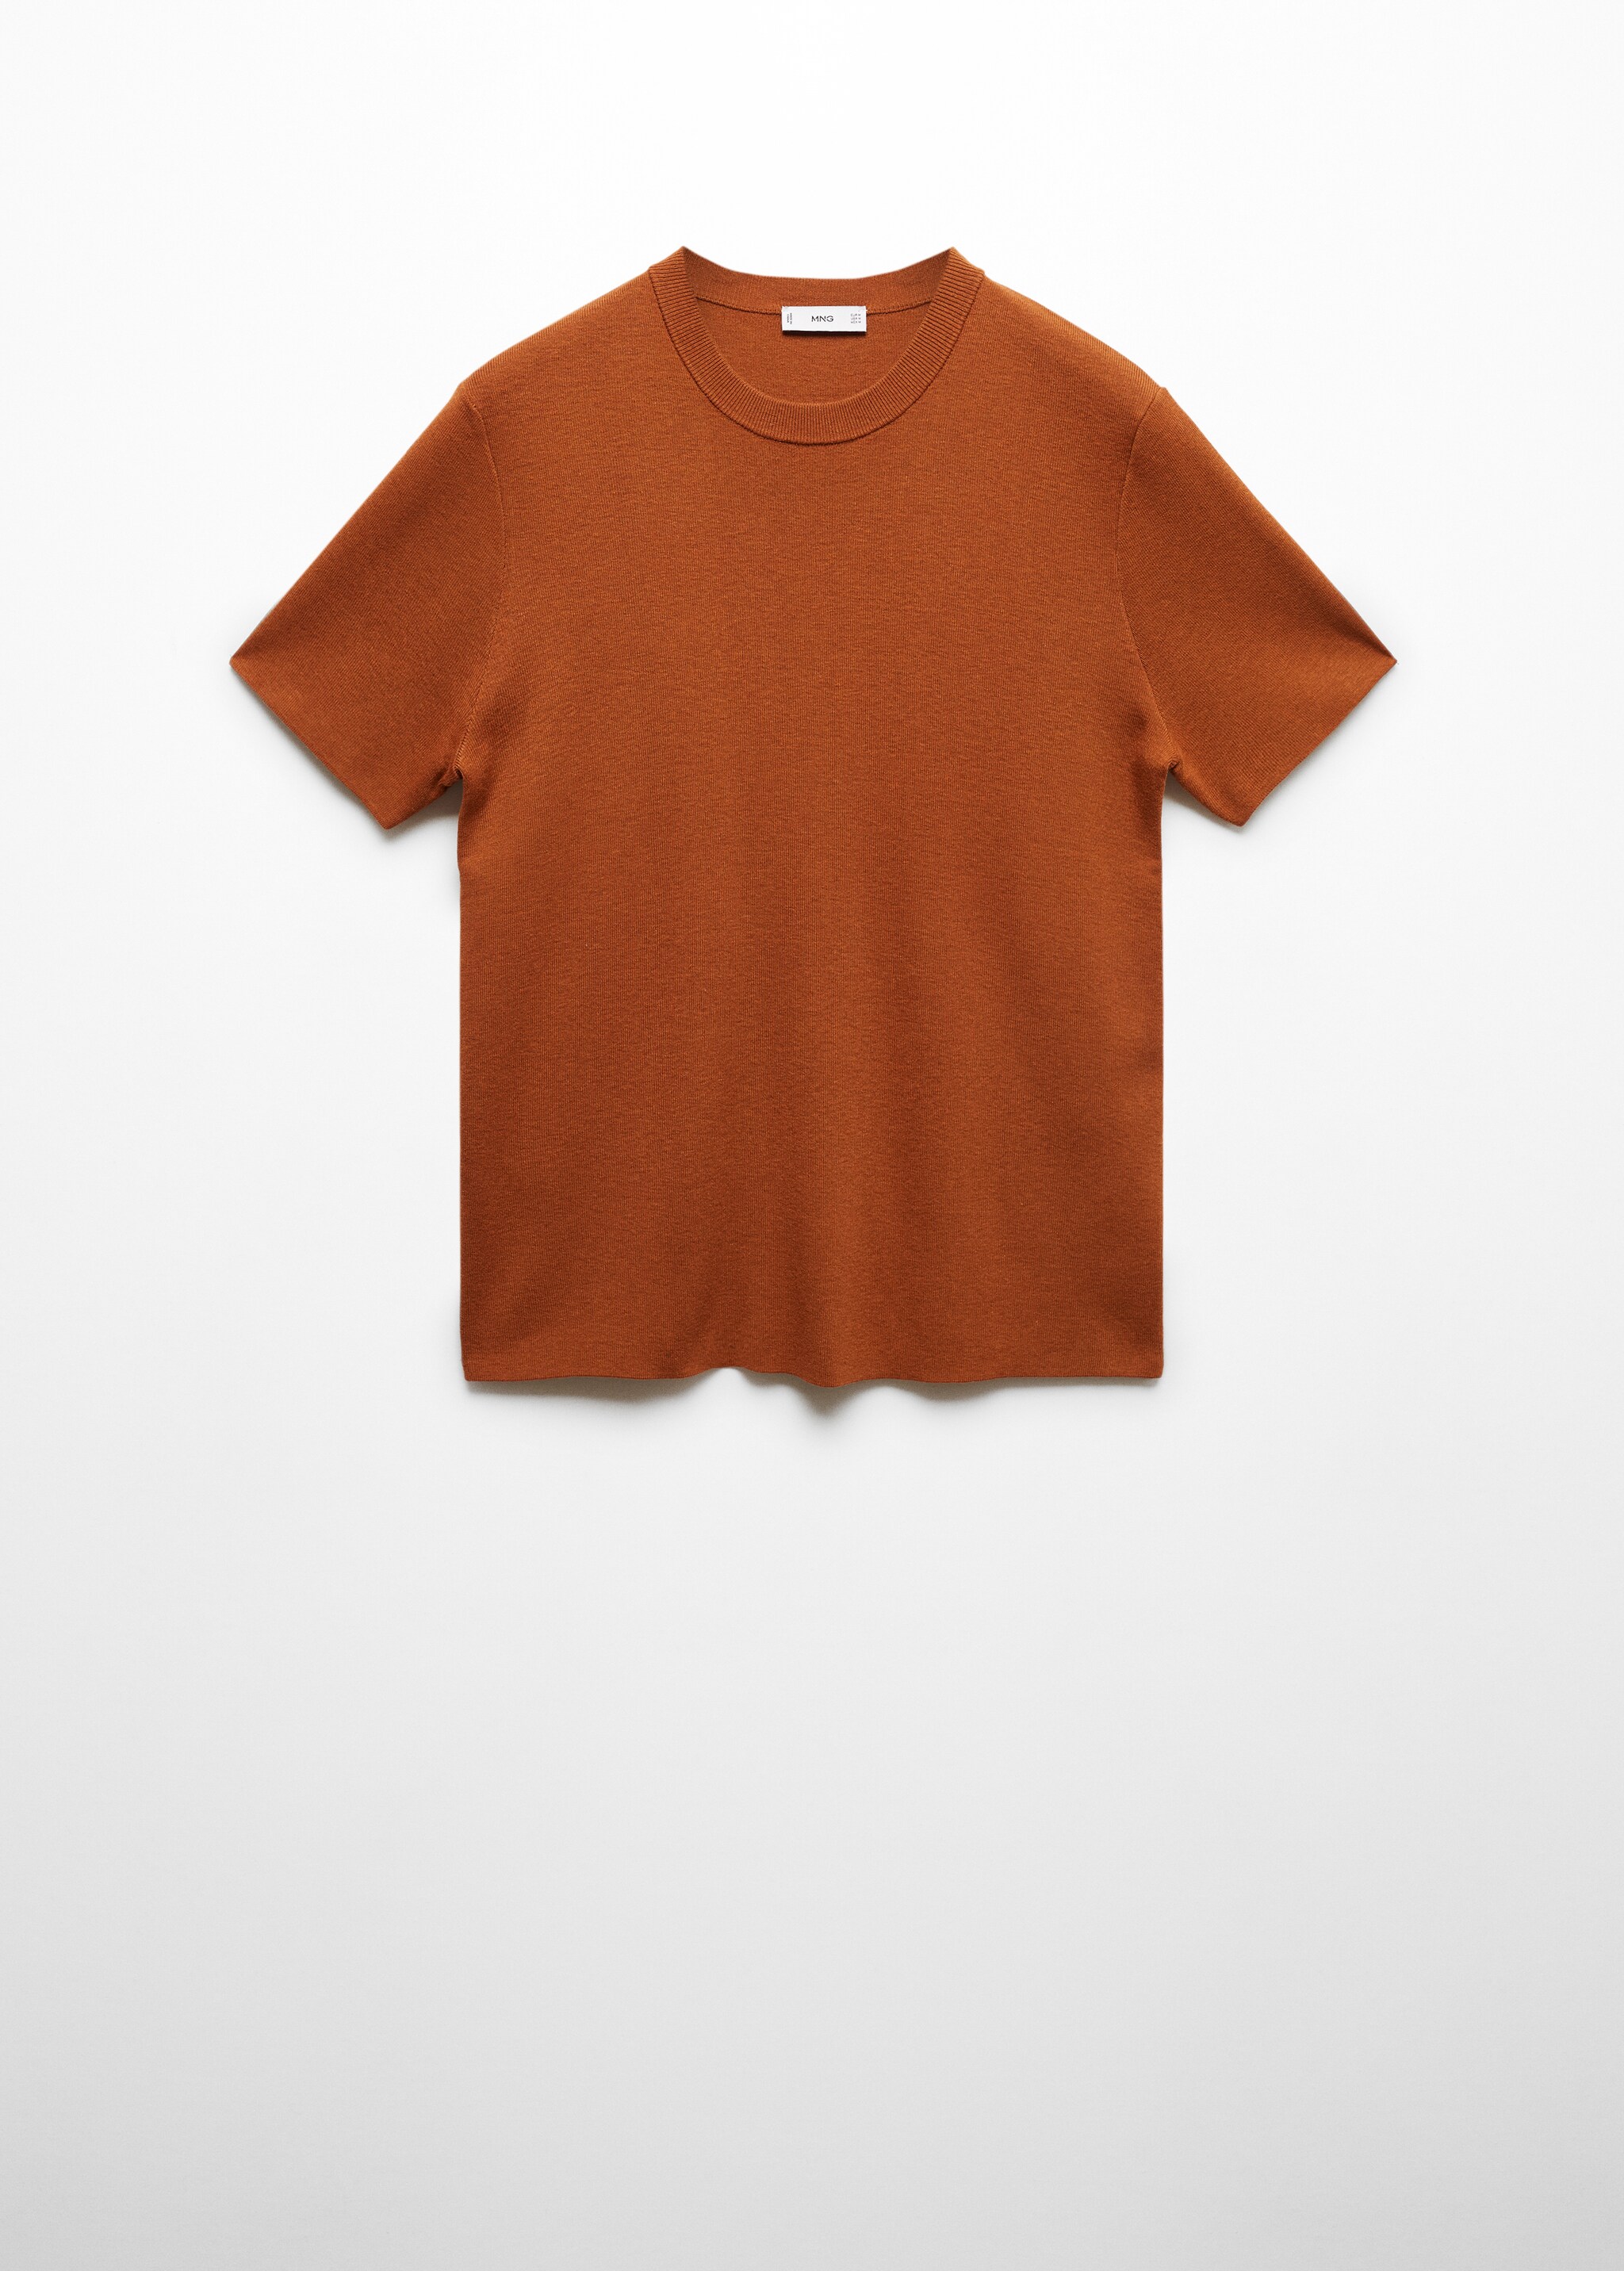 Camiseta básica mezcla algodón - Artículo sin modelo